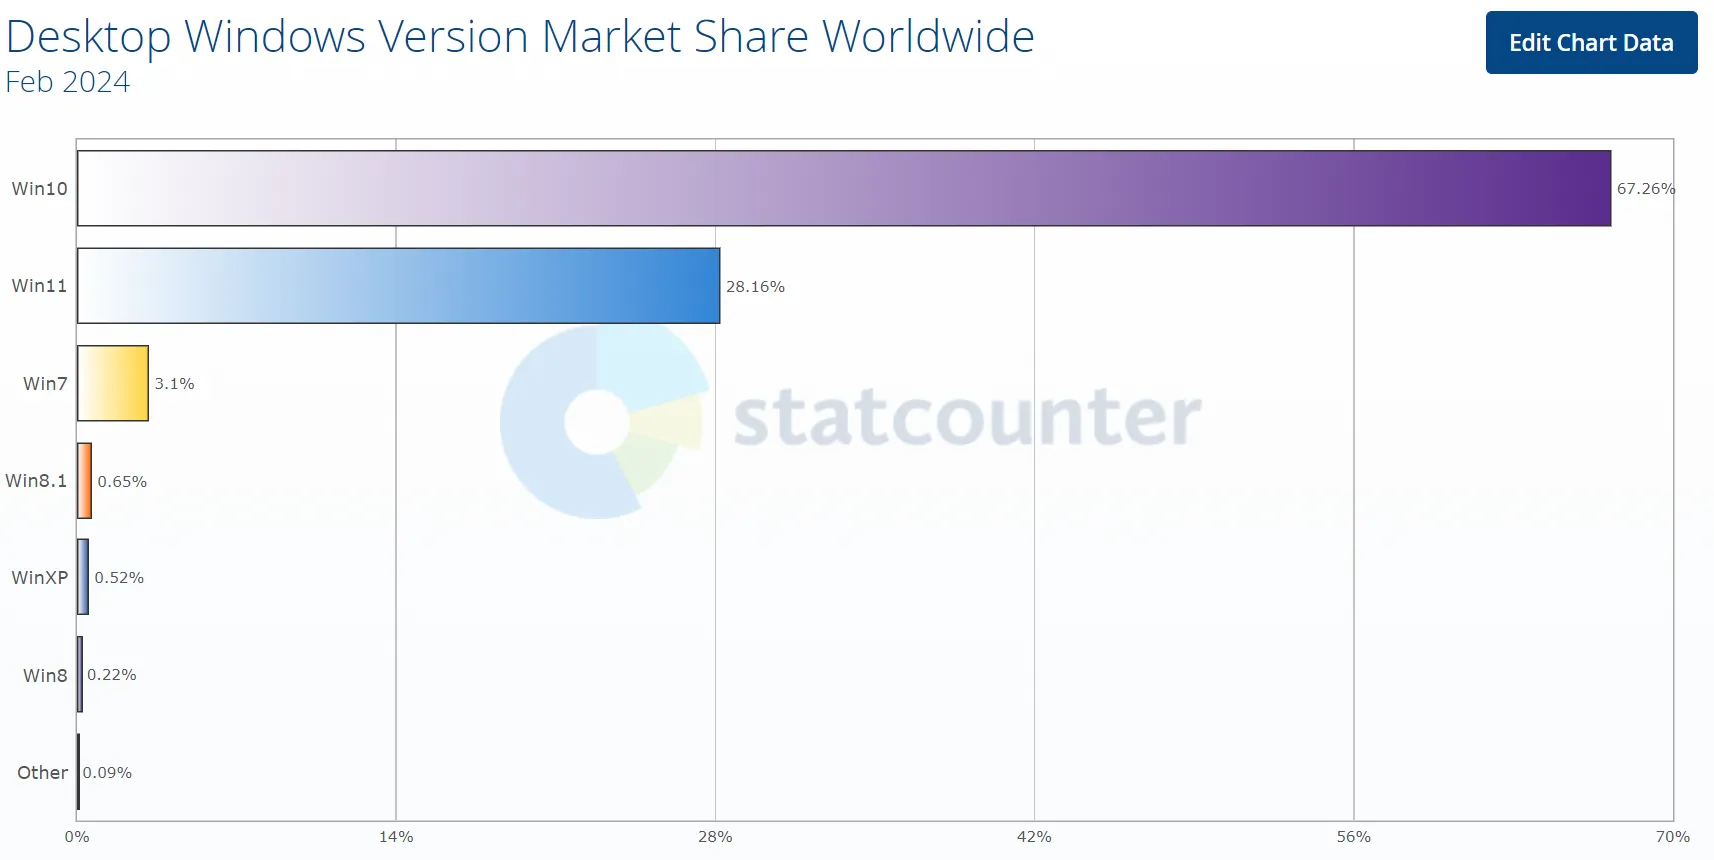 Marktaandeel voor desktop Windows-versie wereldwijd